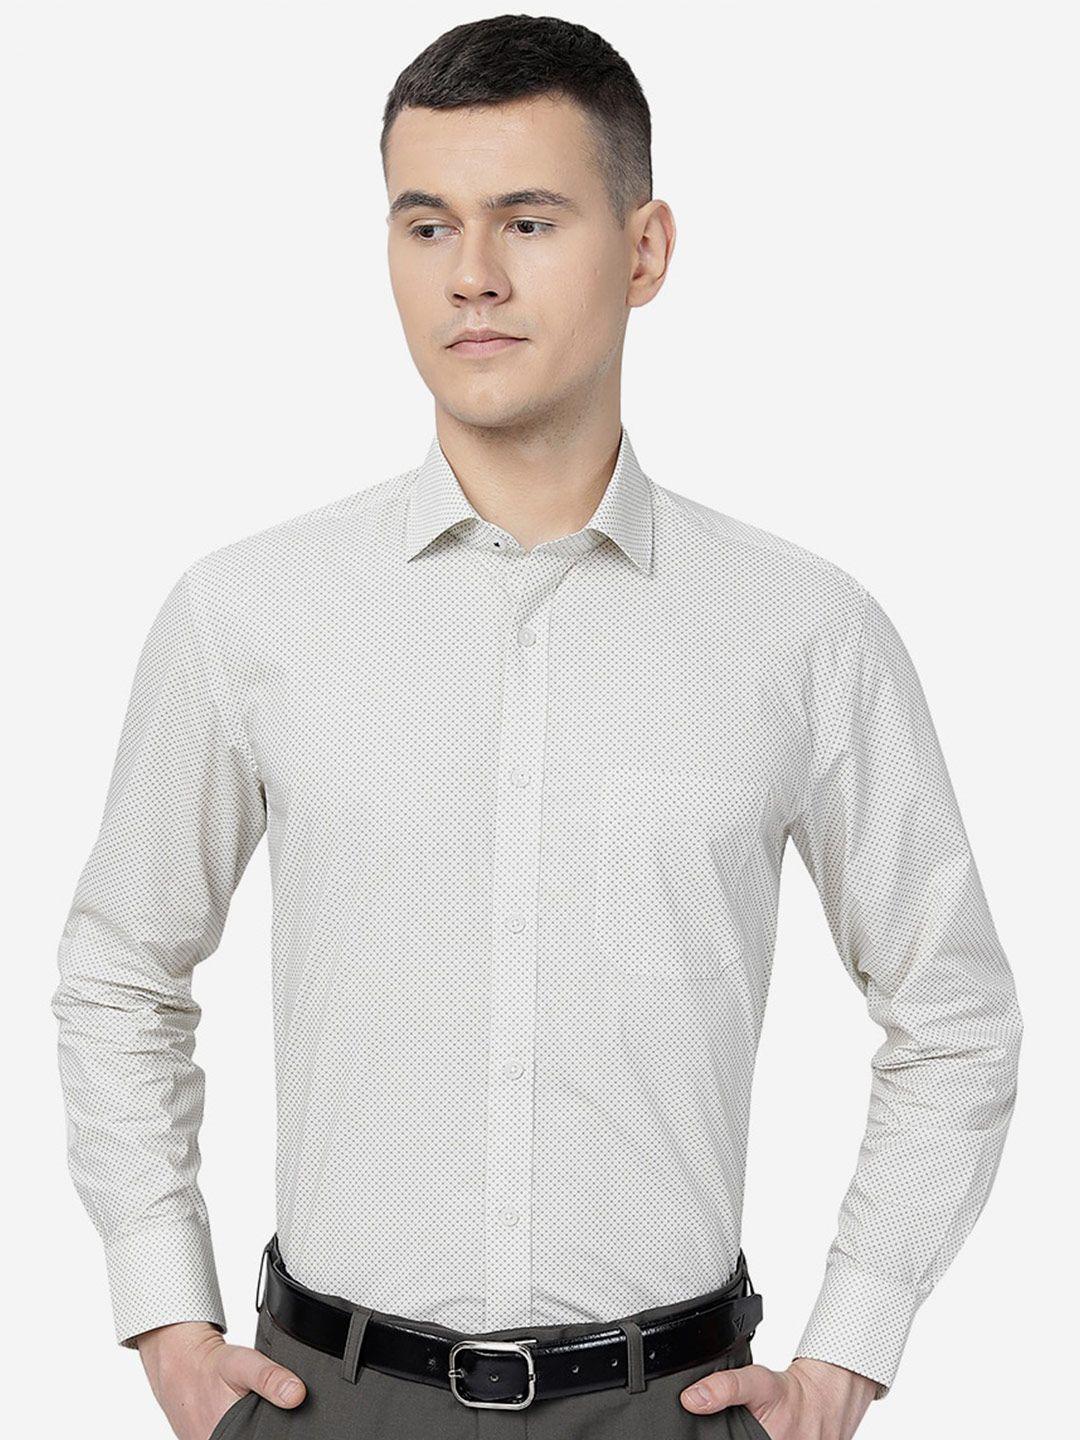 greenfibre micro ditsy printed cotton formal shirt